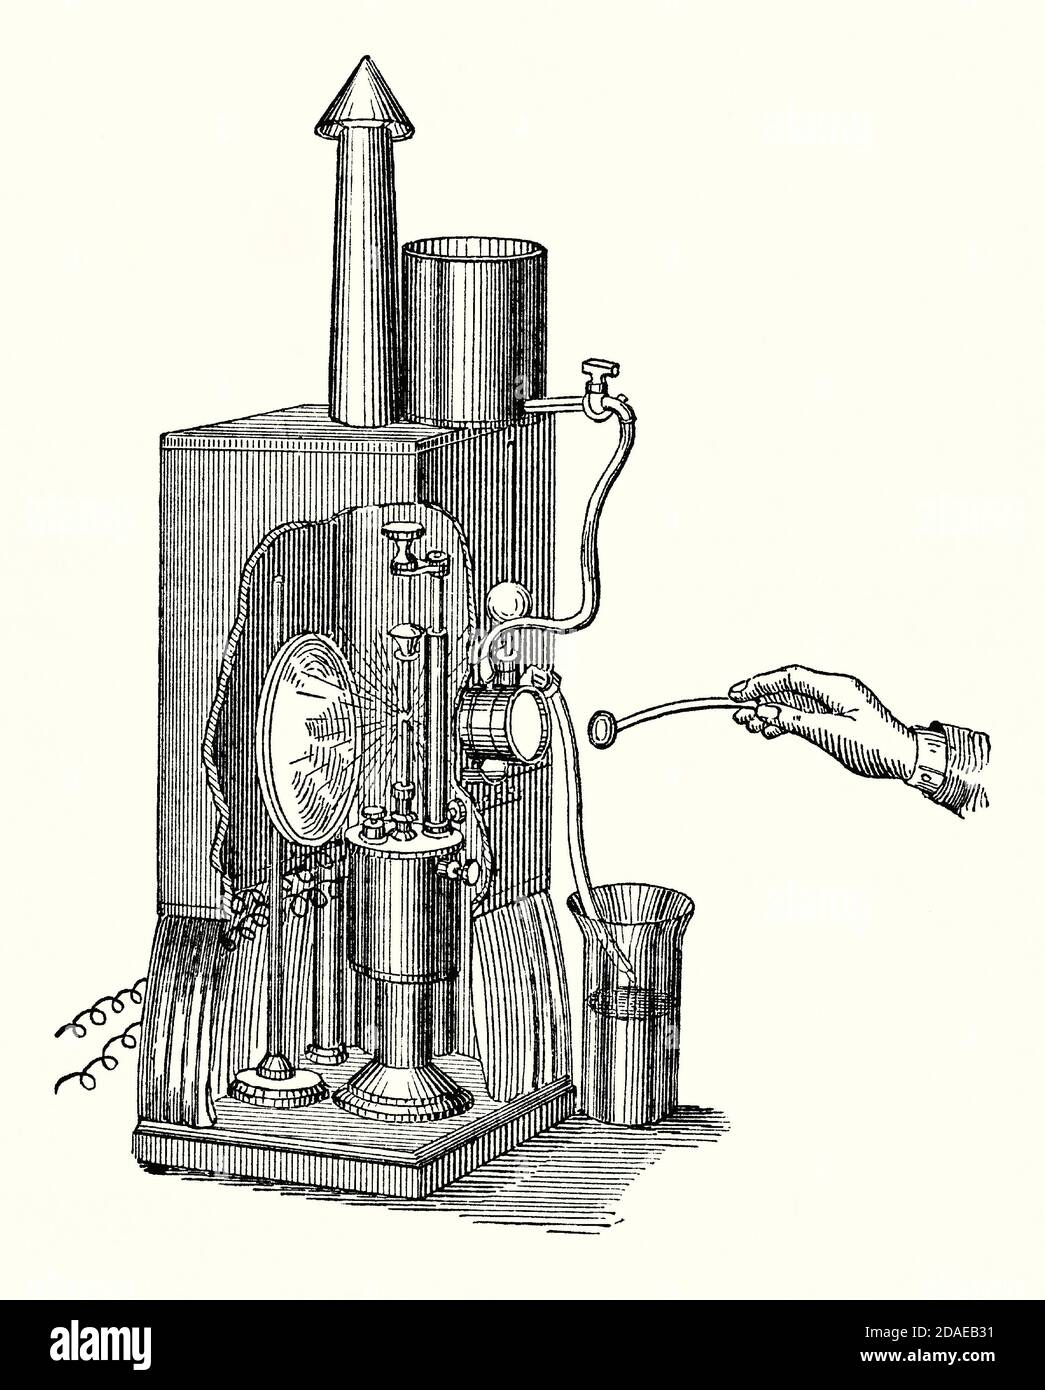 Eine alte Gravur einer Infrarotbox ‘d„Arche Box“. Es ist aus einem viktorianischen Buch der 1880er Jahre. Humphry Davy entwickelte 1806 das erste praktische Lichtbogenlicht. Zwei Stücke von reinem Kohlenstoff haben Strom von einer leistungsstarken Batterie durch sie geführt und ein Lichtbogen entsteht, wenn der Kohlenstoff brennt, wodurch Wärme und Licht. Herschel entdeckte Infrarotlicht im Jahr 1880. John Tyndall (1820–1893) entdeckte den ‘Tyndall-Effekt’ in der Luft. Tyndall ‘wassergekühlte Dunkelbox durchströmt Strahlen durch einen „Strahlungsfilter“, der das Licht herausfiltert. Jedes Objekt, das ‘rePfad des „D-Lichts“ (Infrarotlicht) gehalten wird, wird heiß. Stockfoto